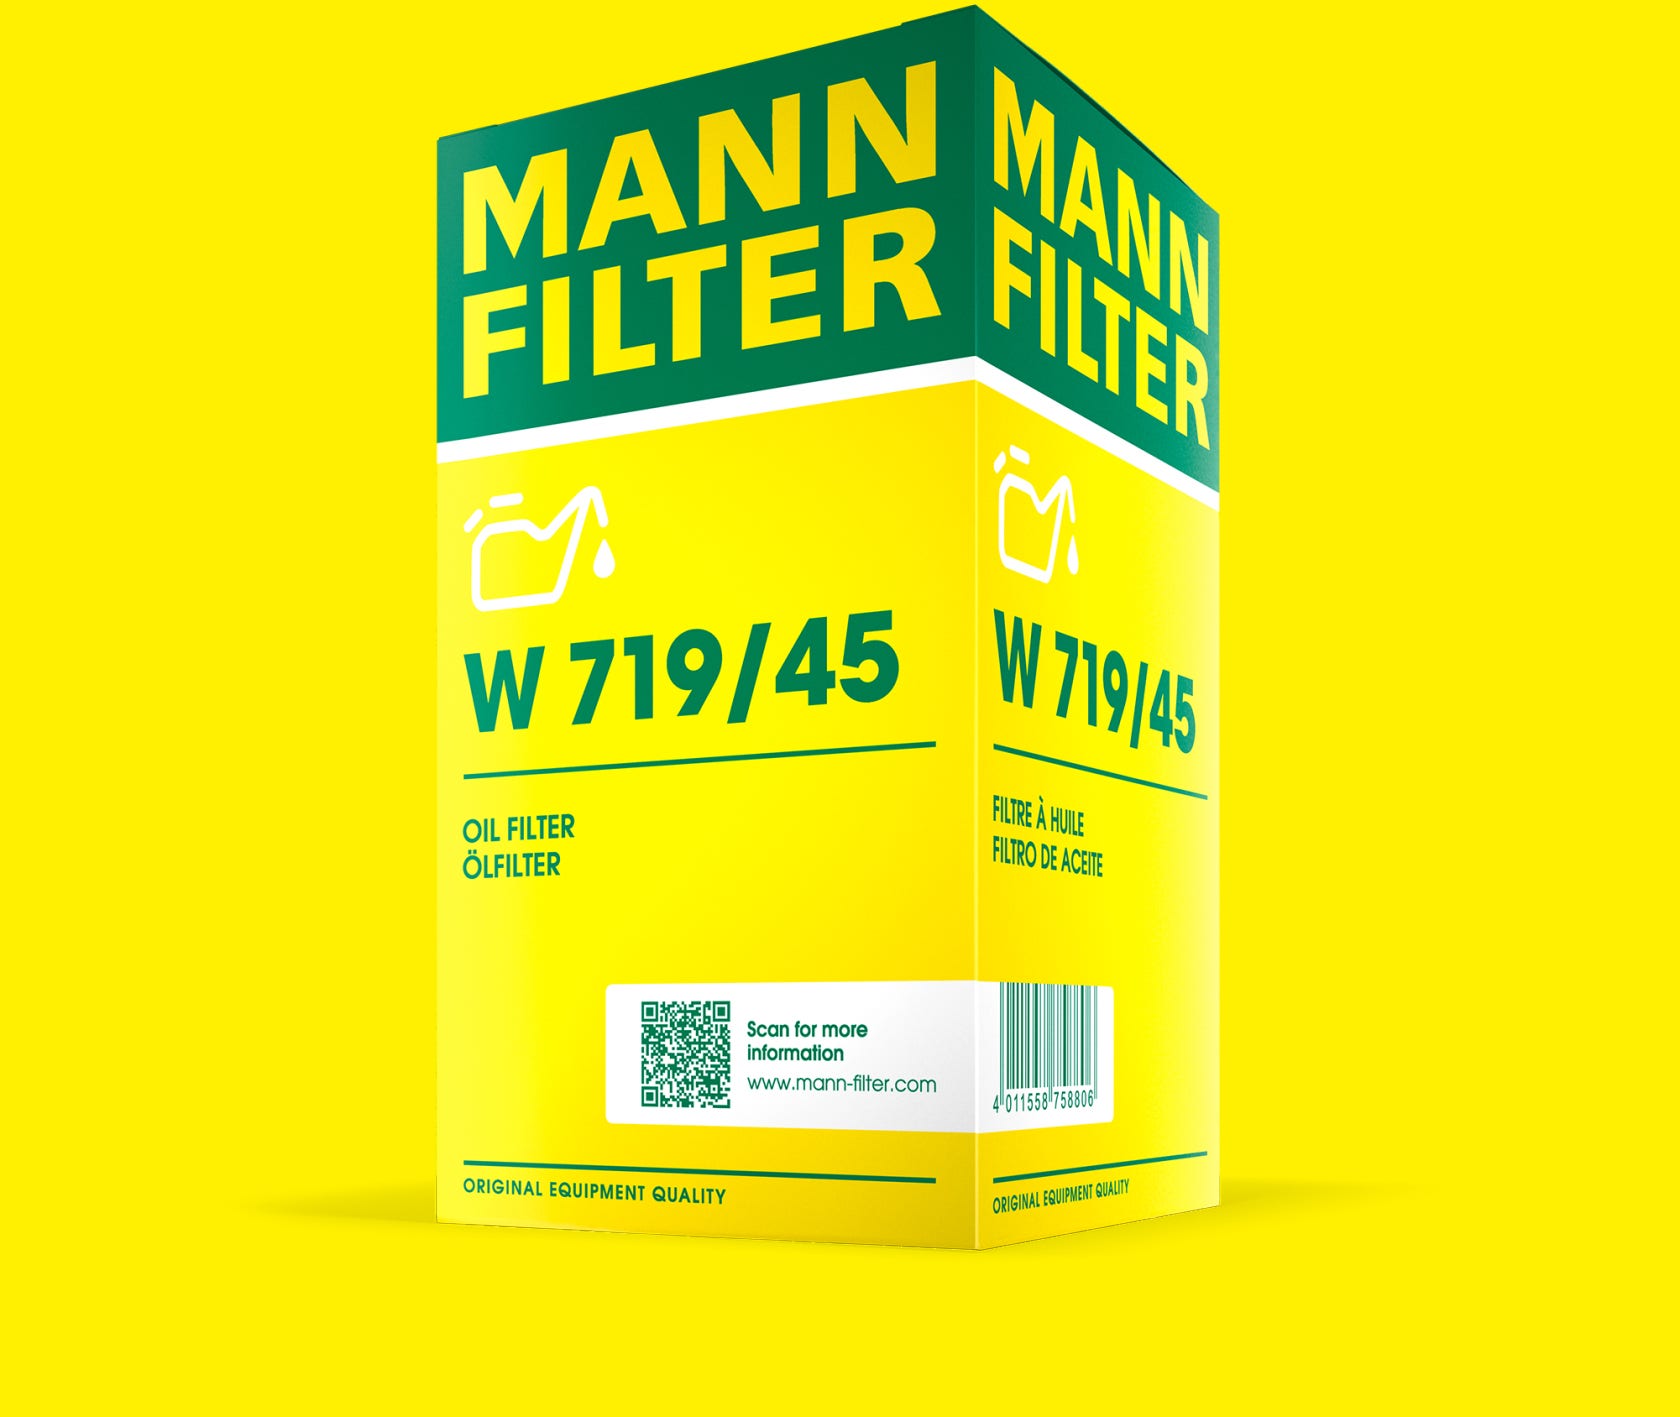 Desain baru MANN-FILTER ditampilkan pada contoh kemasan filter oli w719/45